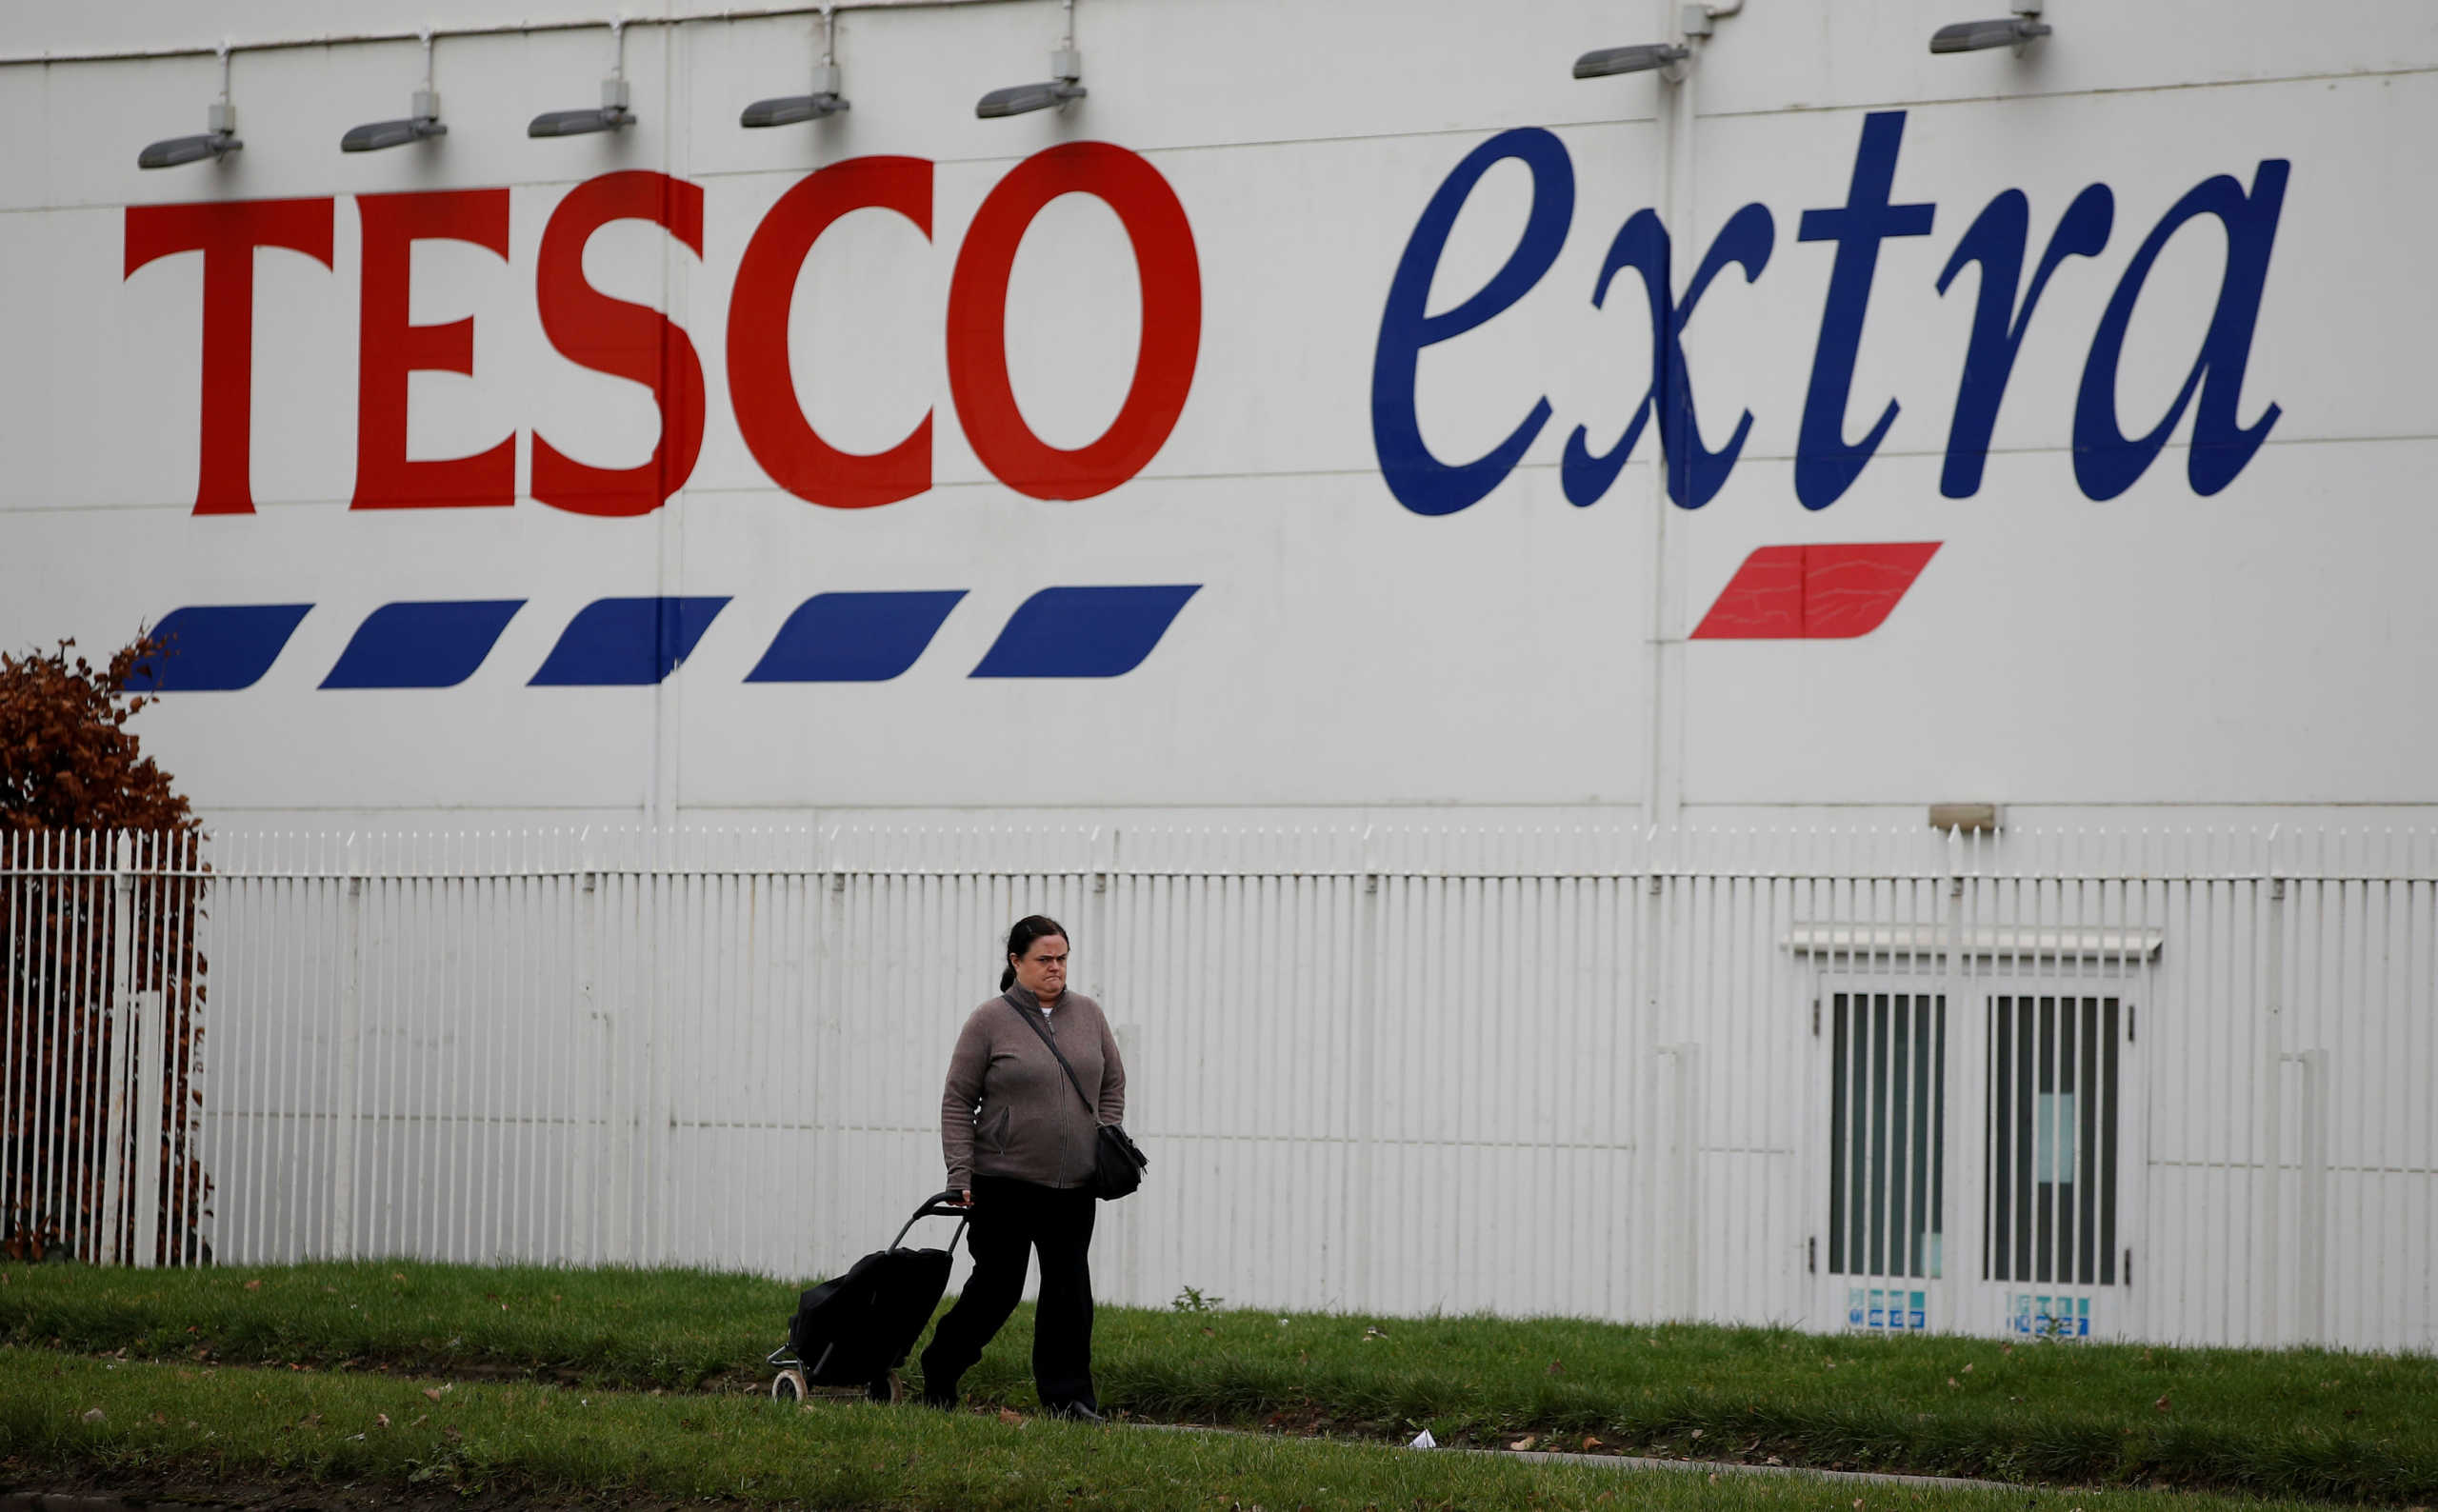 Κορονοϊός: Περιορισμούς στην αγορά προϊόντων επιβάλλουν τα σούπερ μάρκετ Tesco στη Βρετανία